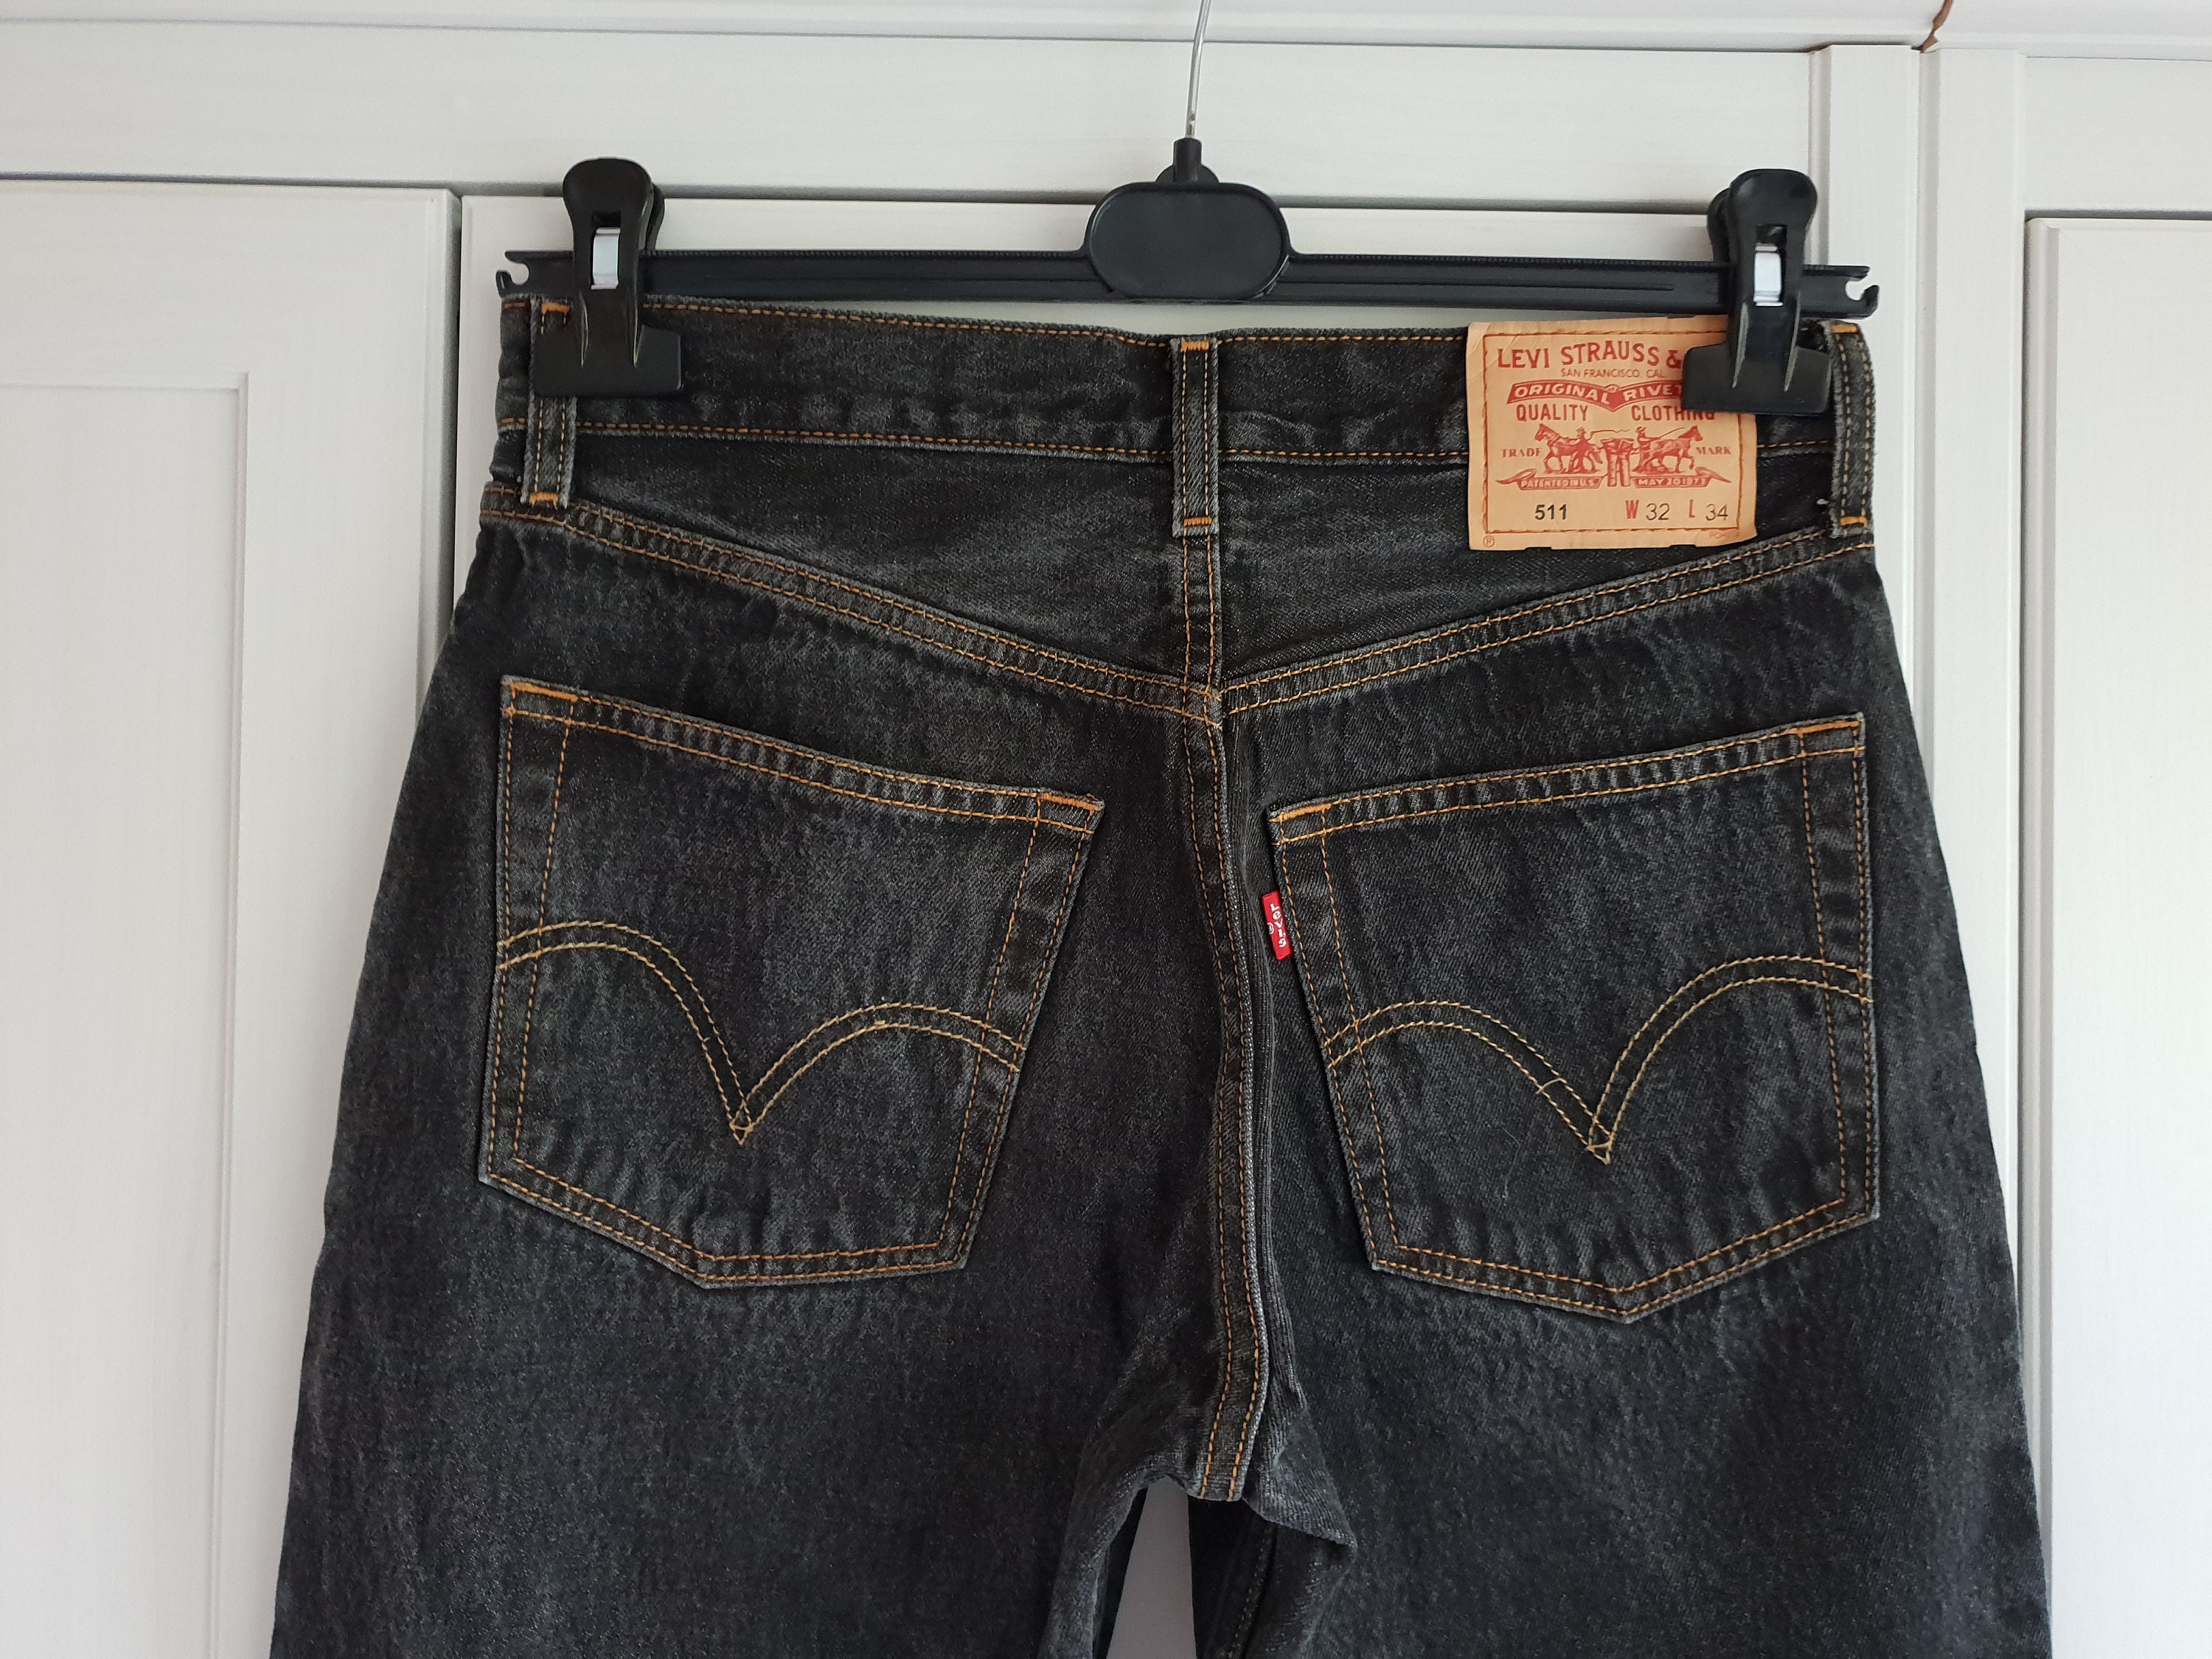 Levis 511 Jeans Black Denim Vintage Levi's Men Women Size | Etsy